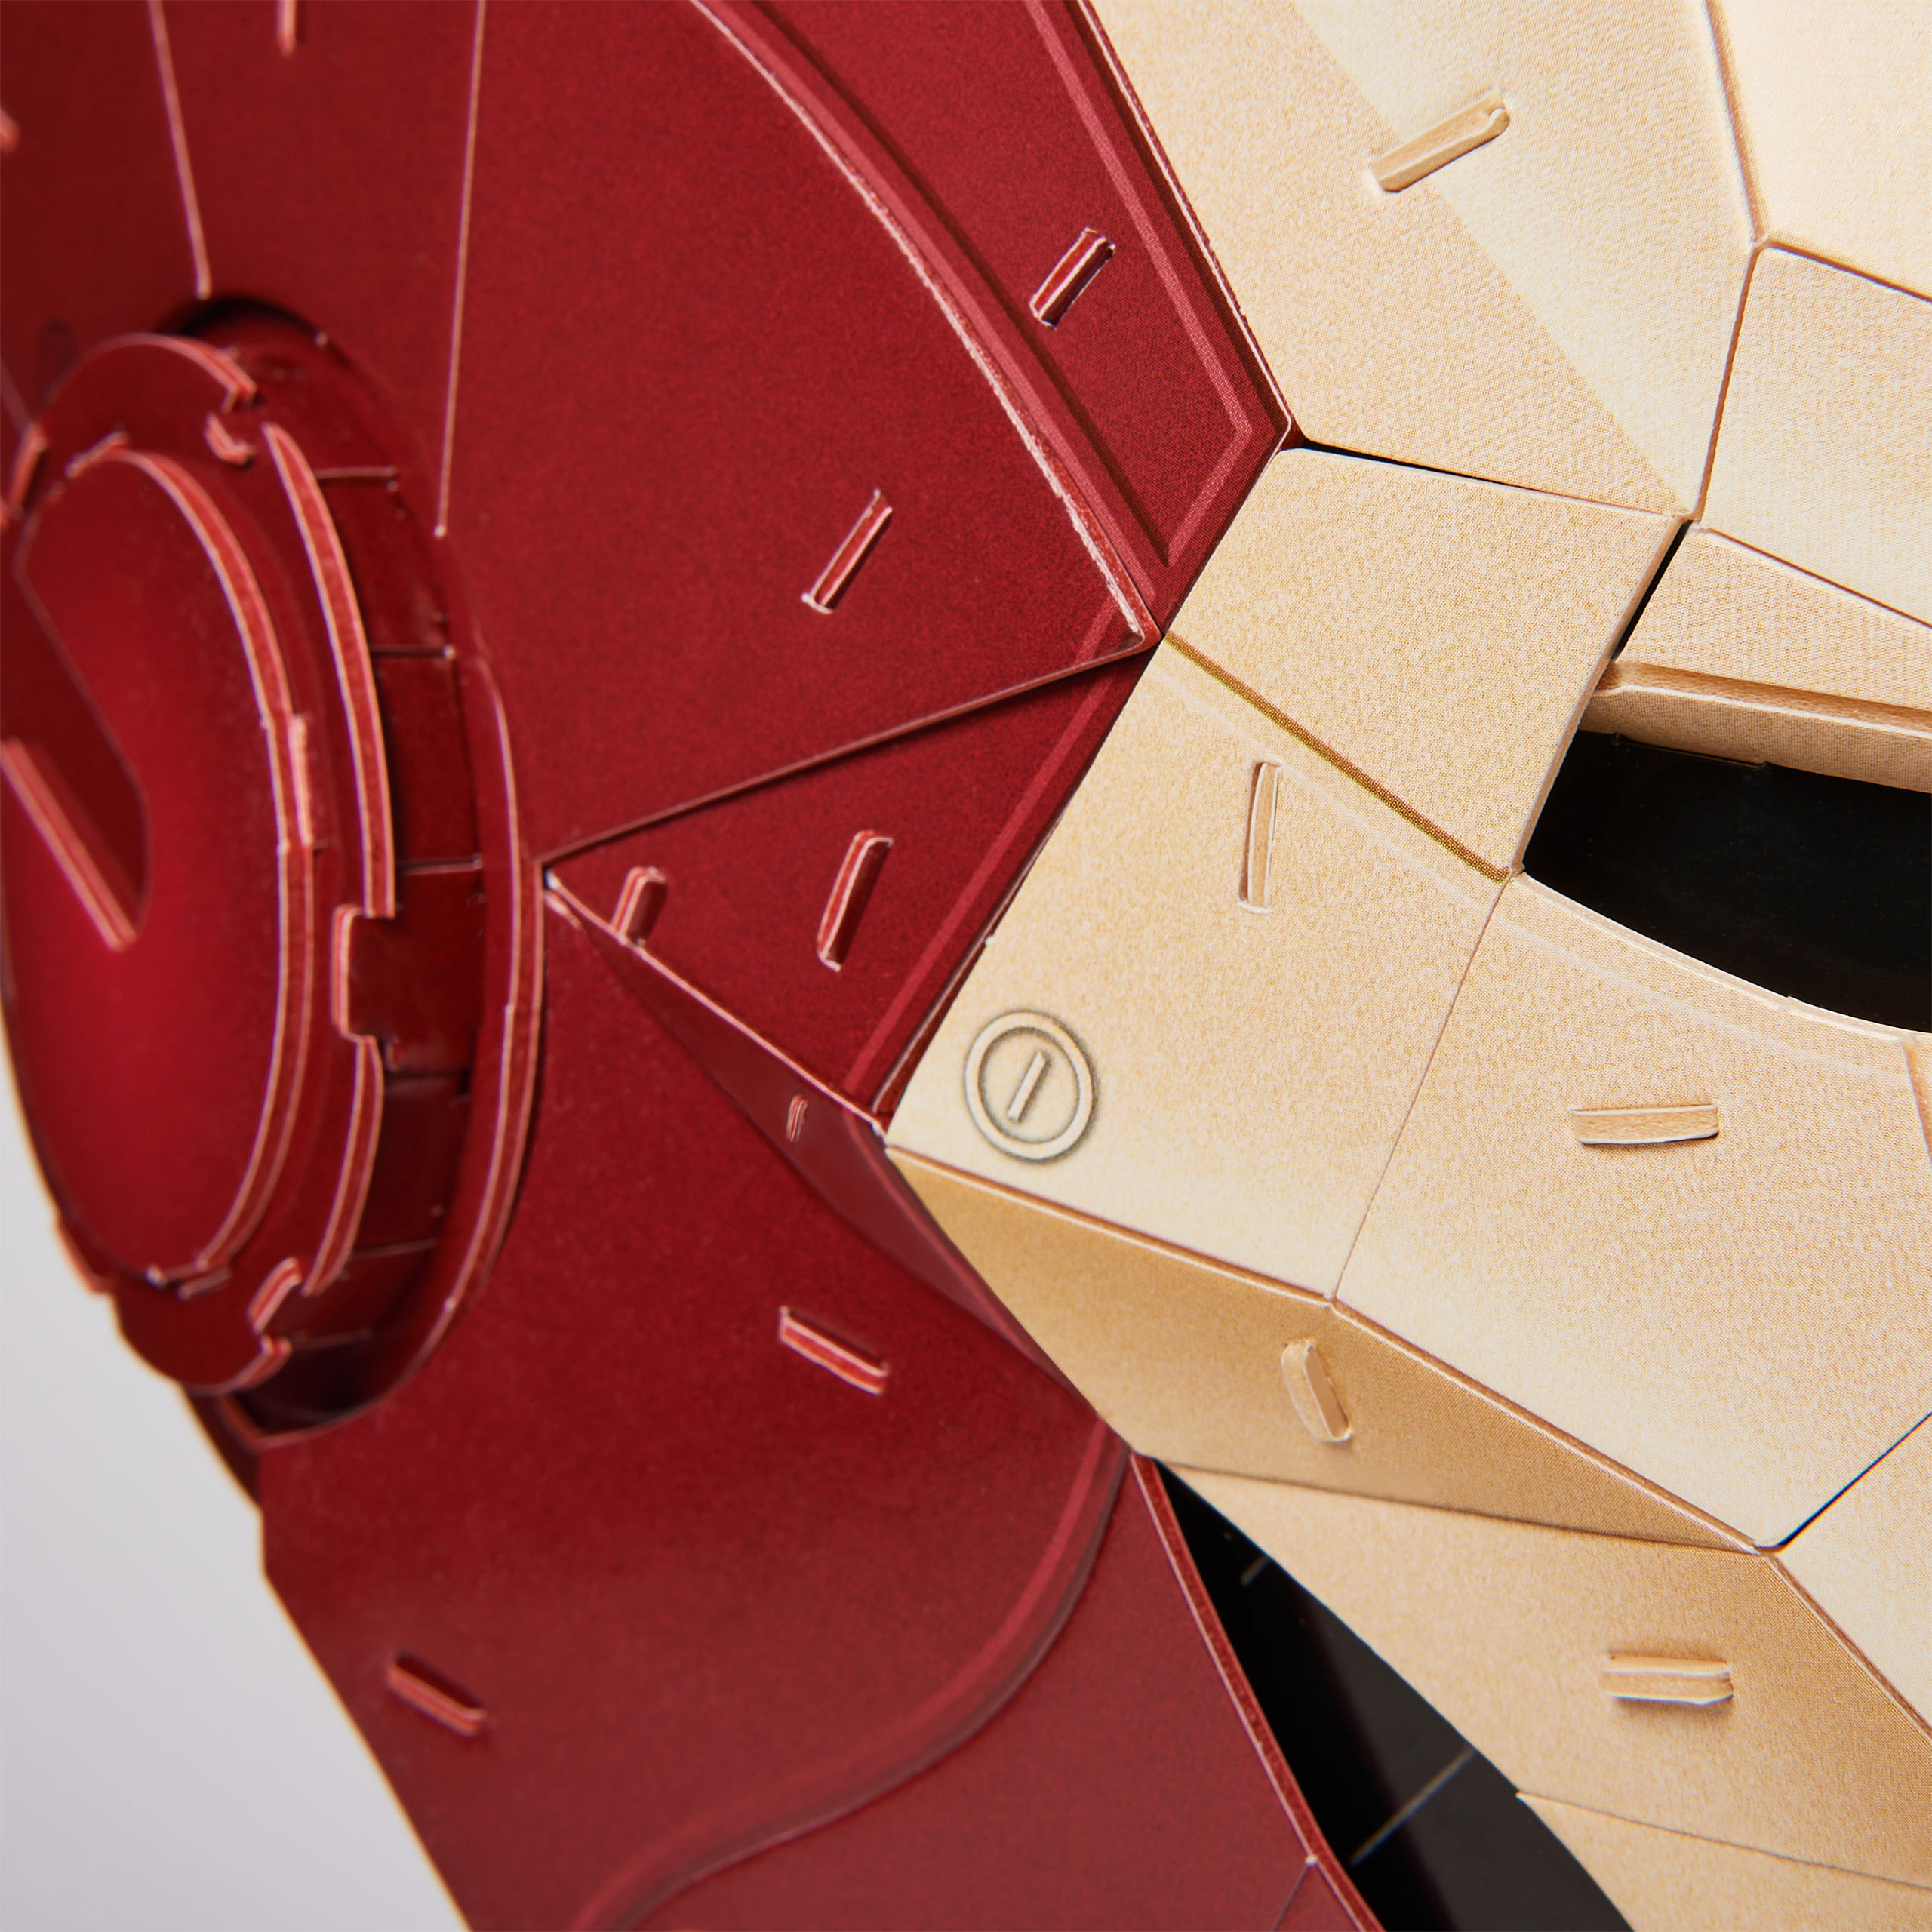 Iron Man - Helm 4D Build Modell Bausatz